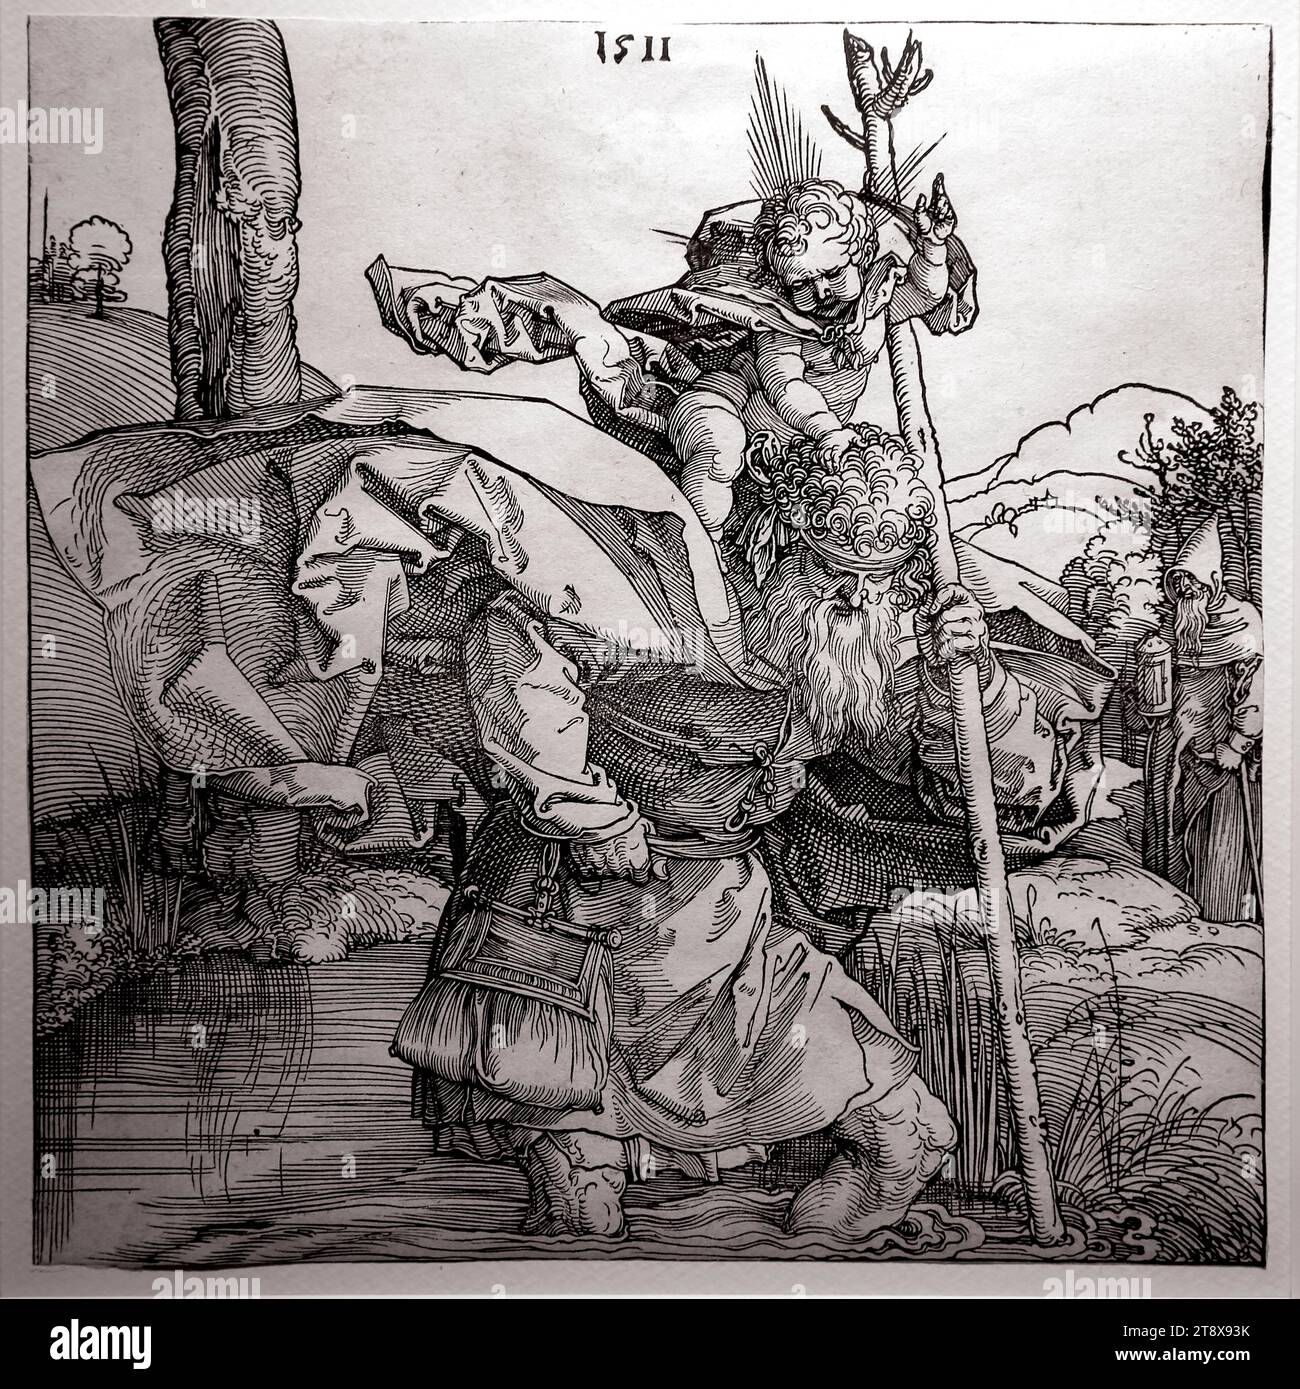 Saint Christophe portant l'enfant Christ. Gravure sur bois, gravure par Abecht durer en 1511. Nuremberg. British Museum, Londres Royaume-Uni. Banque D'Images